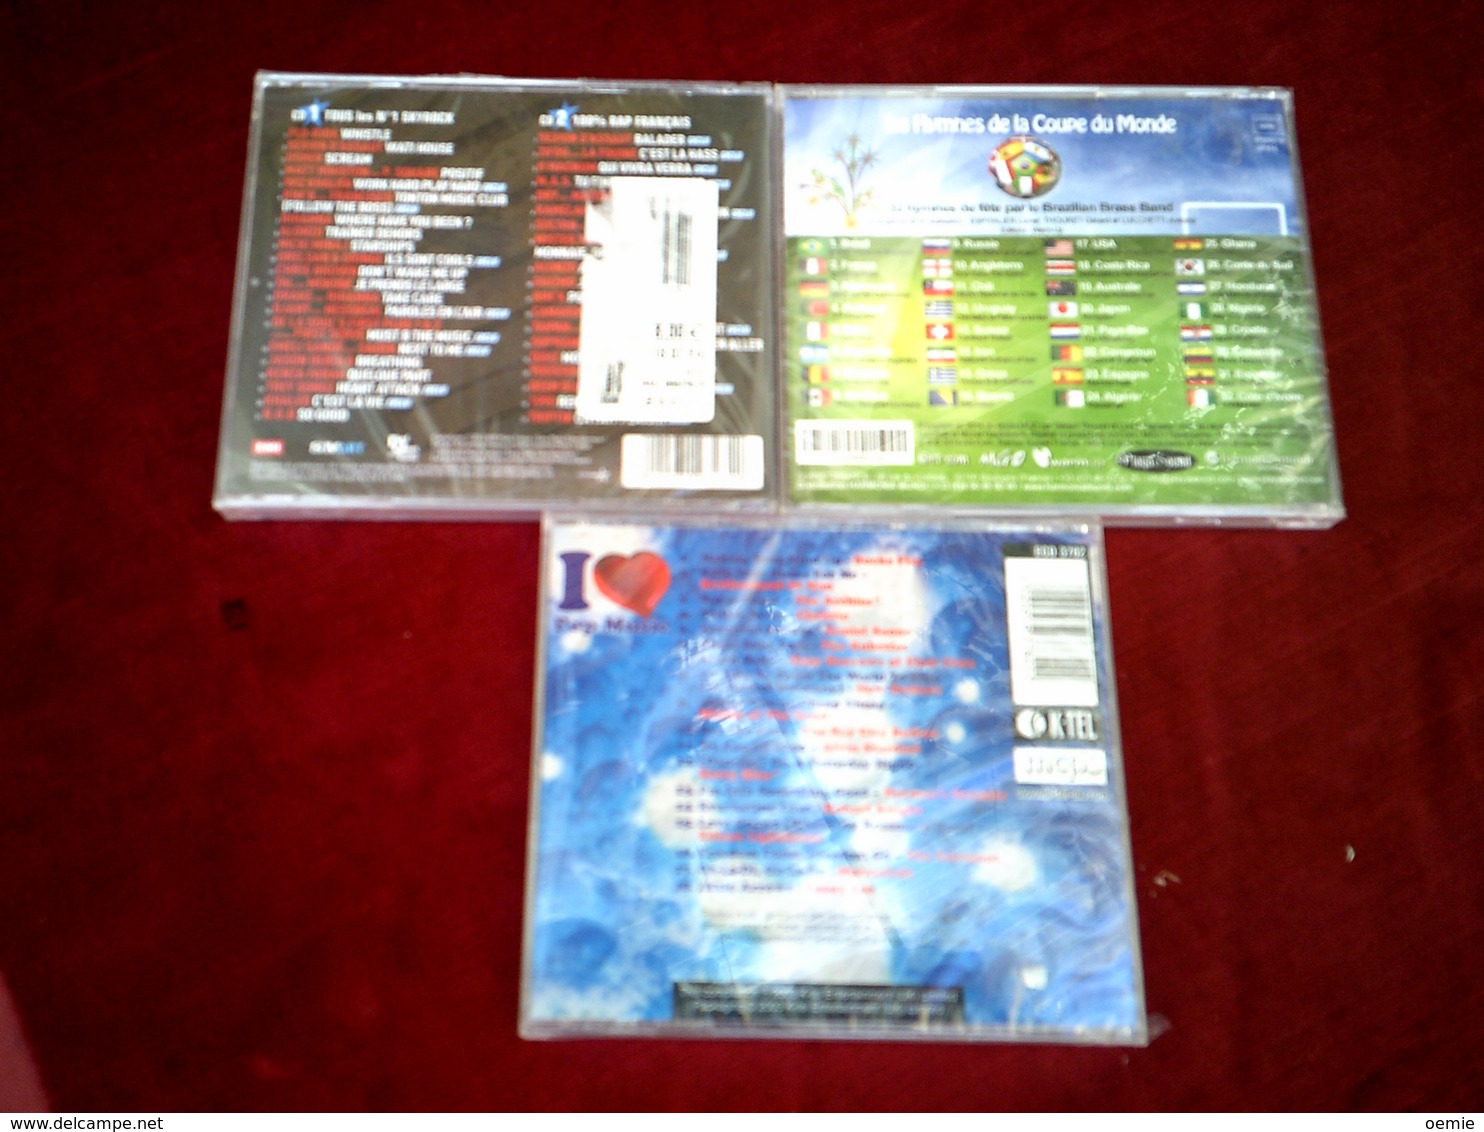 COLLECTION DE 3 CD ALBUMS  DE COMPILATION ° POP MUSIC + LES HYMNES DE LA COUPE DU MONDE + SKYROCK 2012 VOL 3 DOUBLE CD - Volledige Verzamelingen